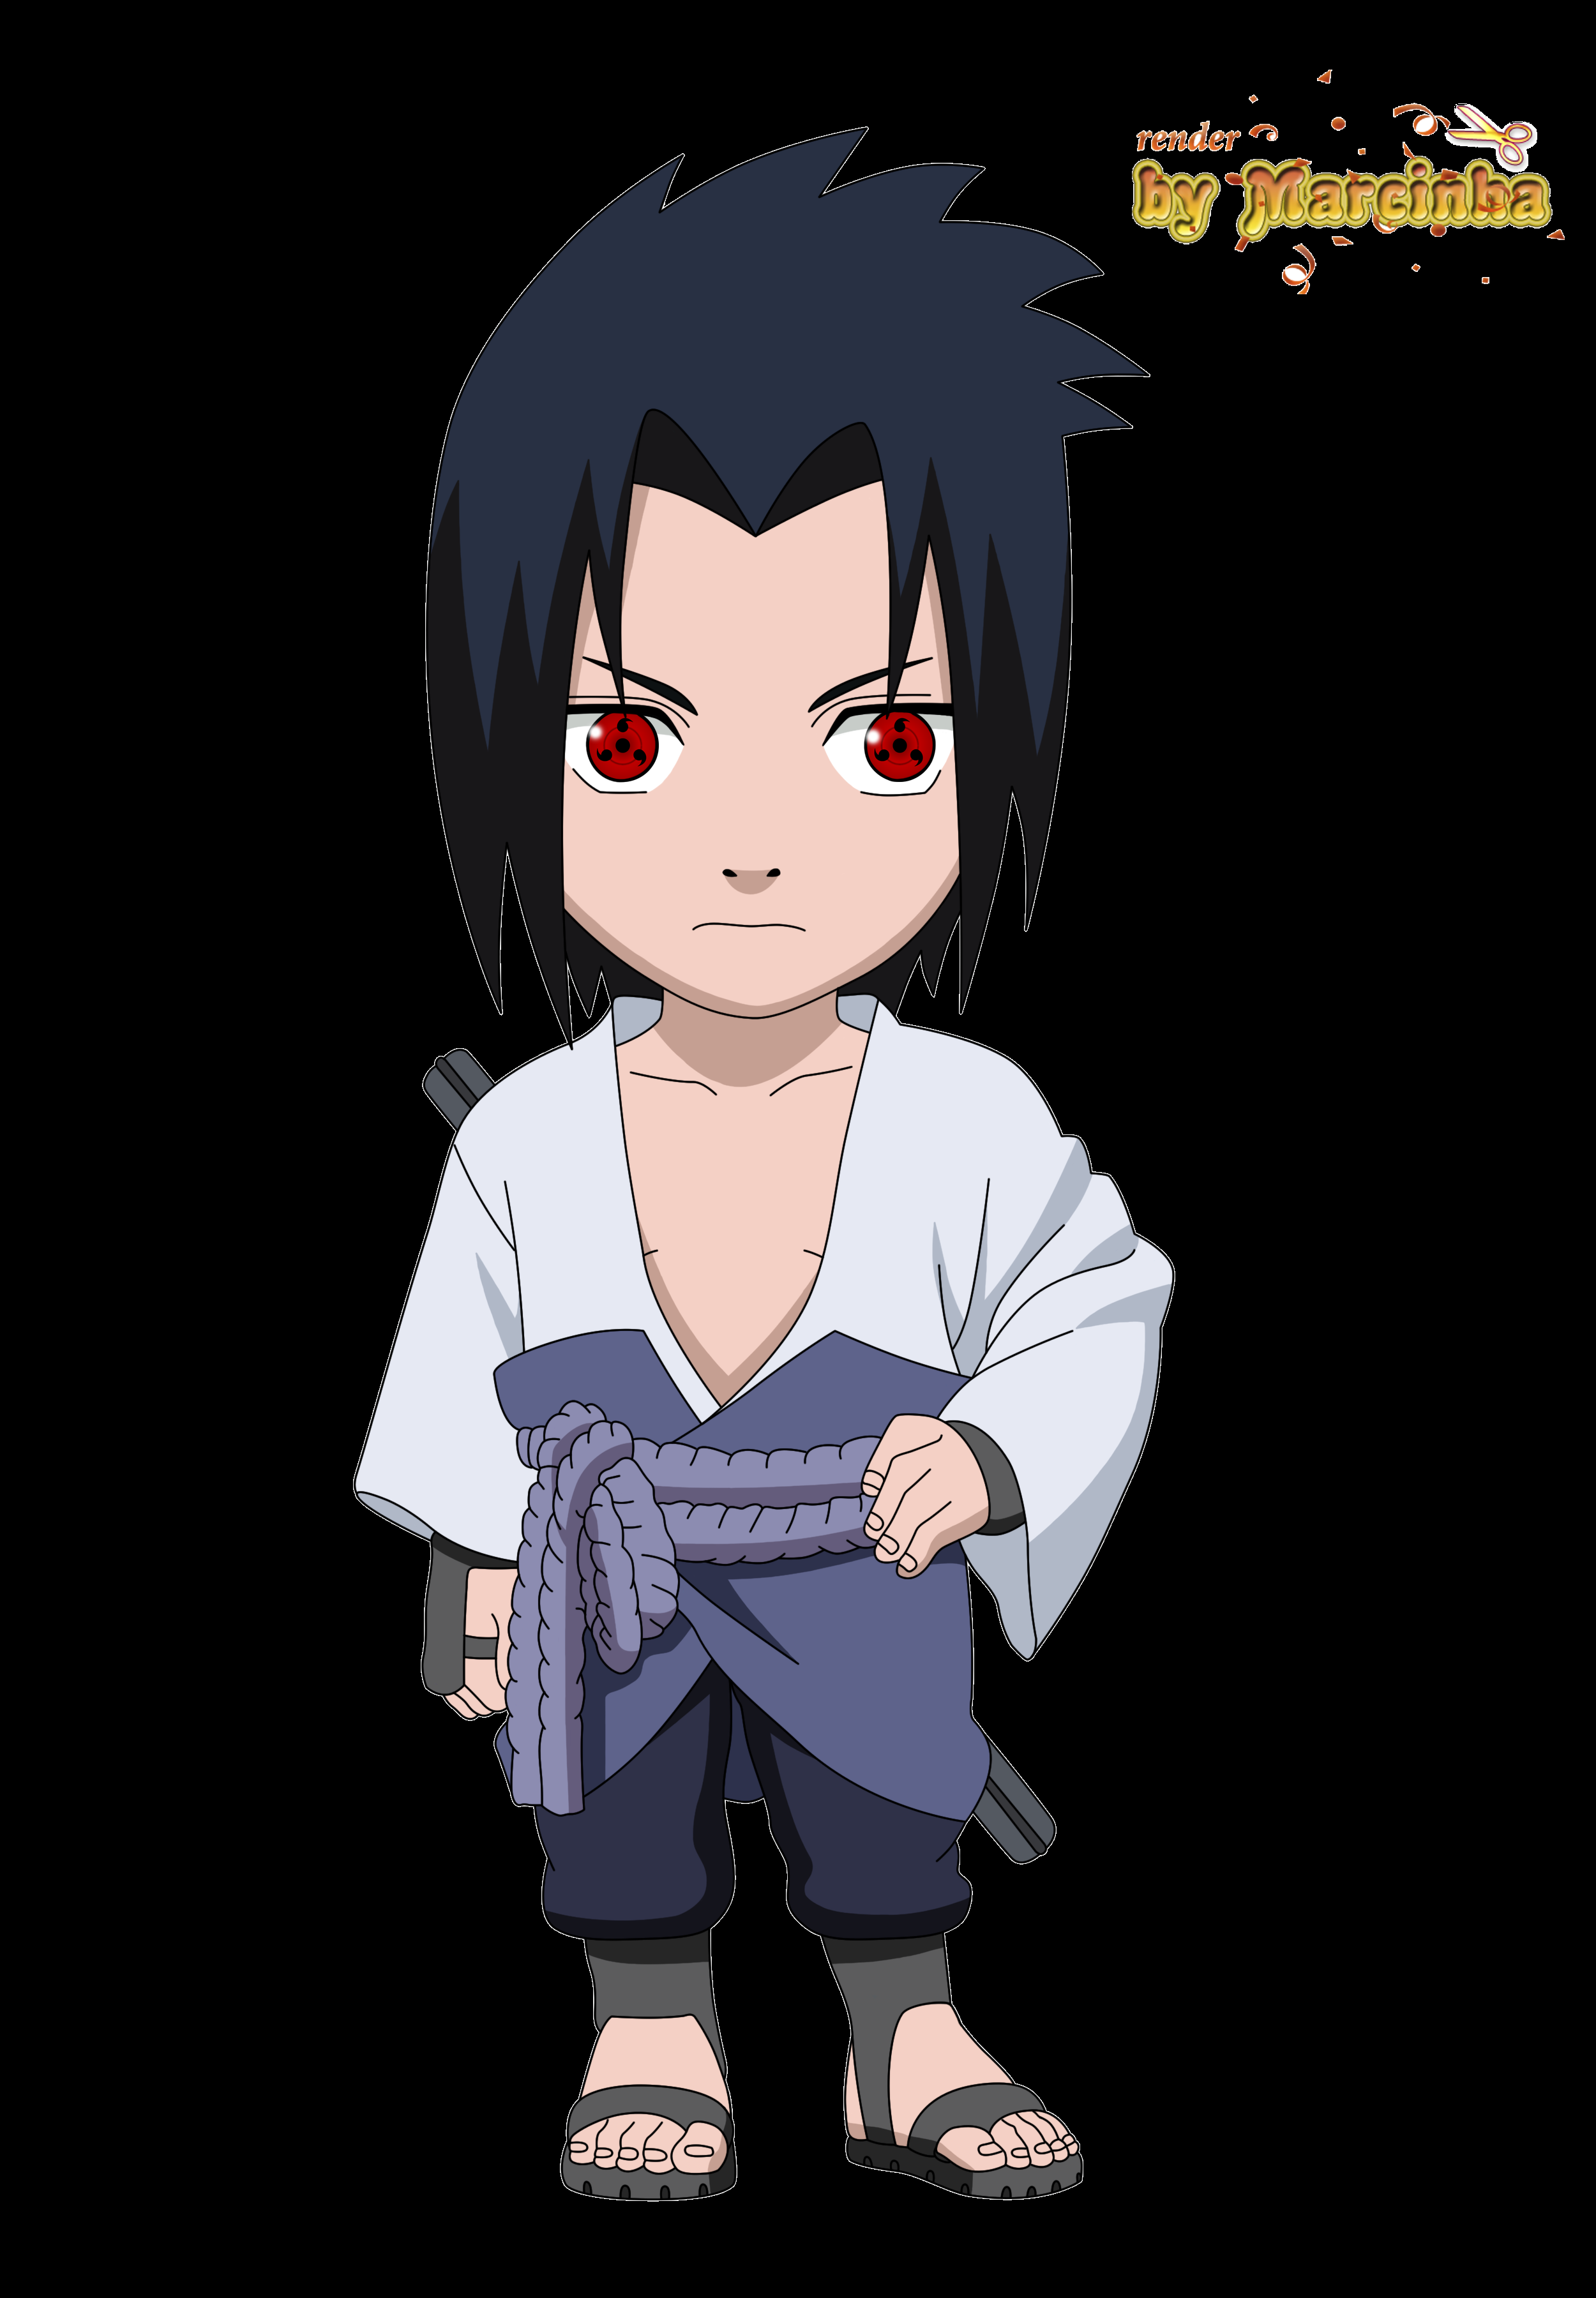 Bạn muốn sở hữu các tập tin ảnh Sasuke ấn tượng nhất? Đừng bỏ lỡ cơ hội tải xuống miễn phí các tệp tin này và khám phá thế giới của Sasuke Uchiha trong Naruto ngay nào!